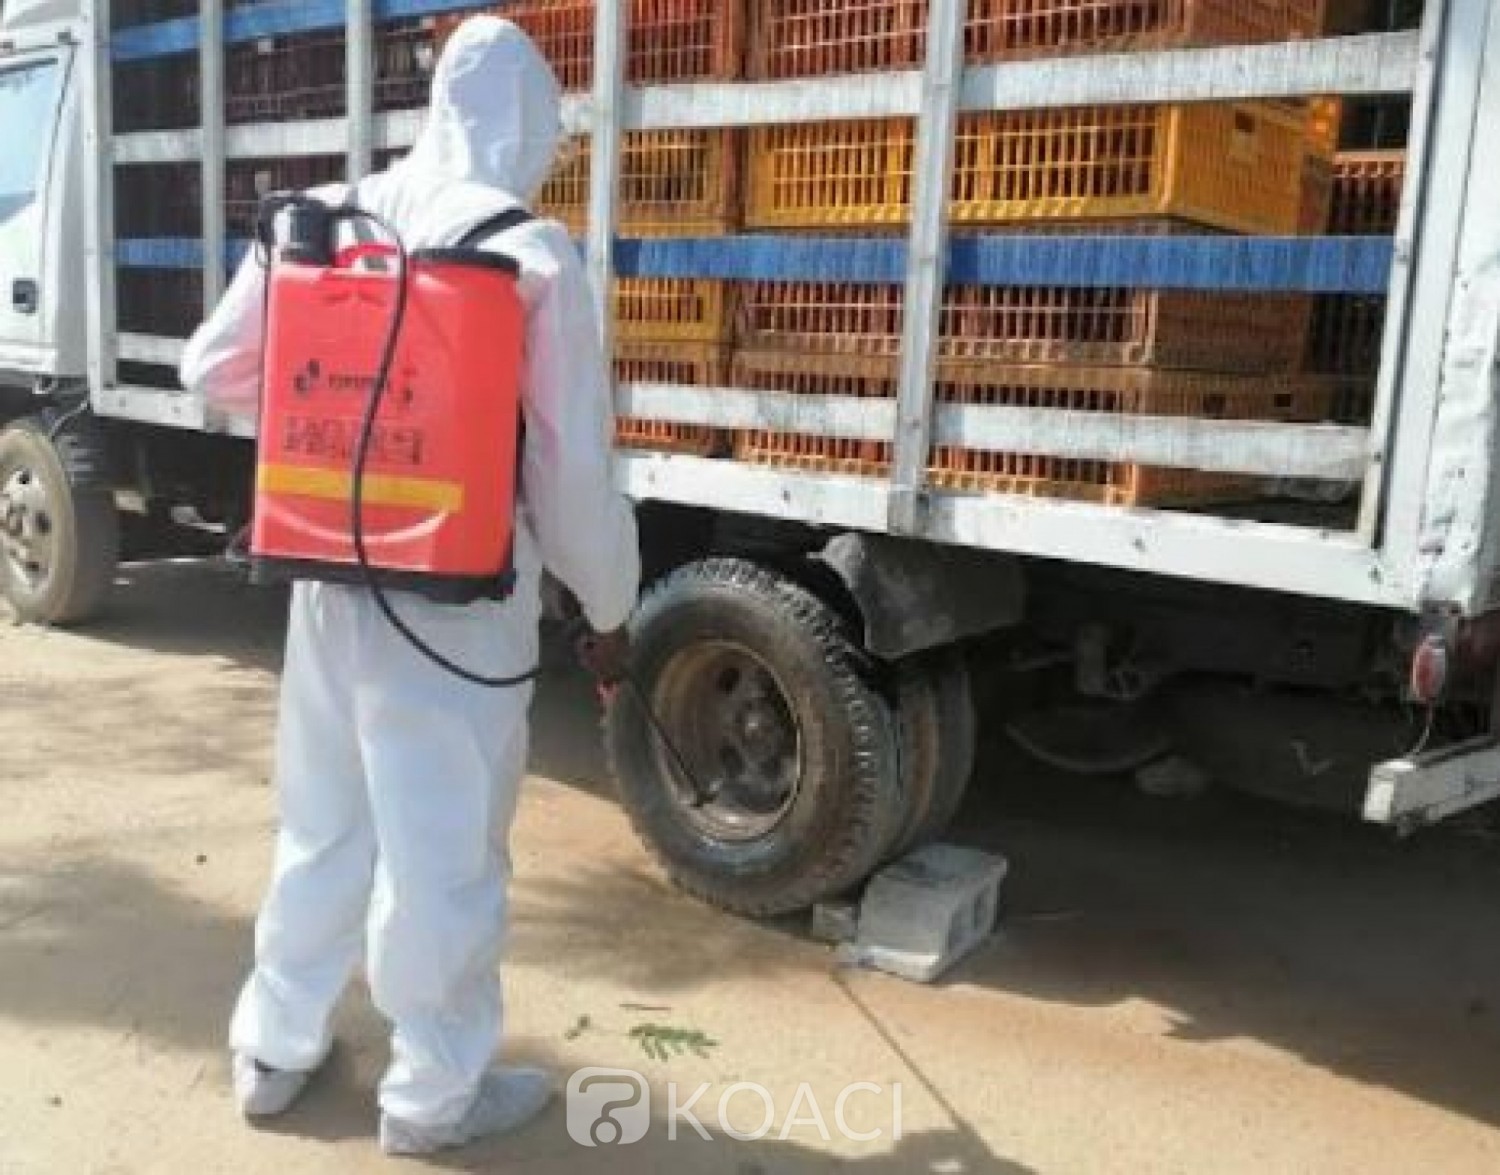 Côte d'Ivoire : Grippe aviaire, 170 mille sujets abattus, Sidi Touré annonce des indemnisations pour les producteurs pour la poursuite de leurs activités